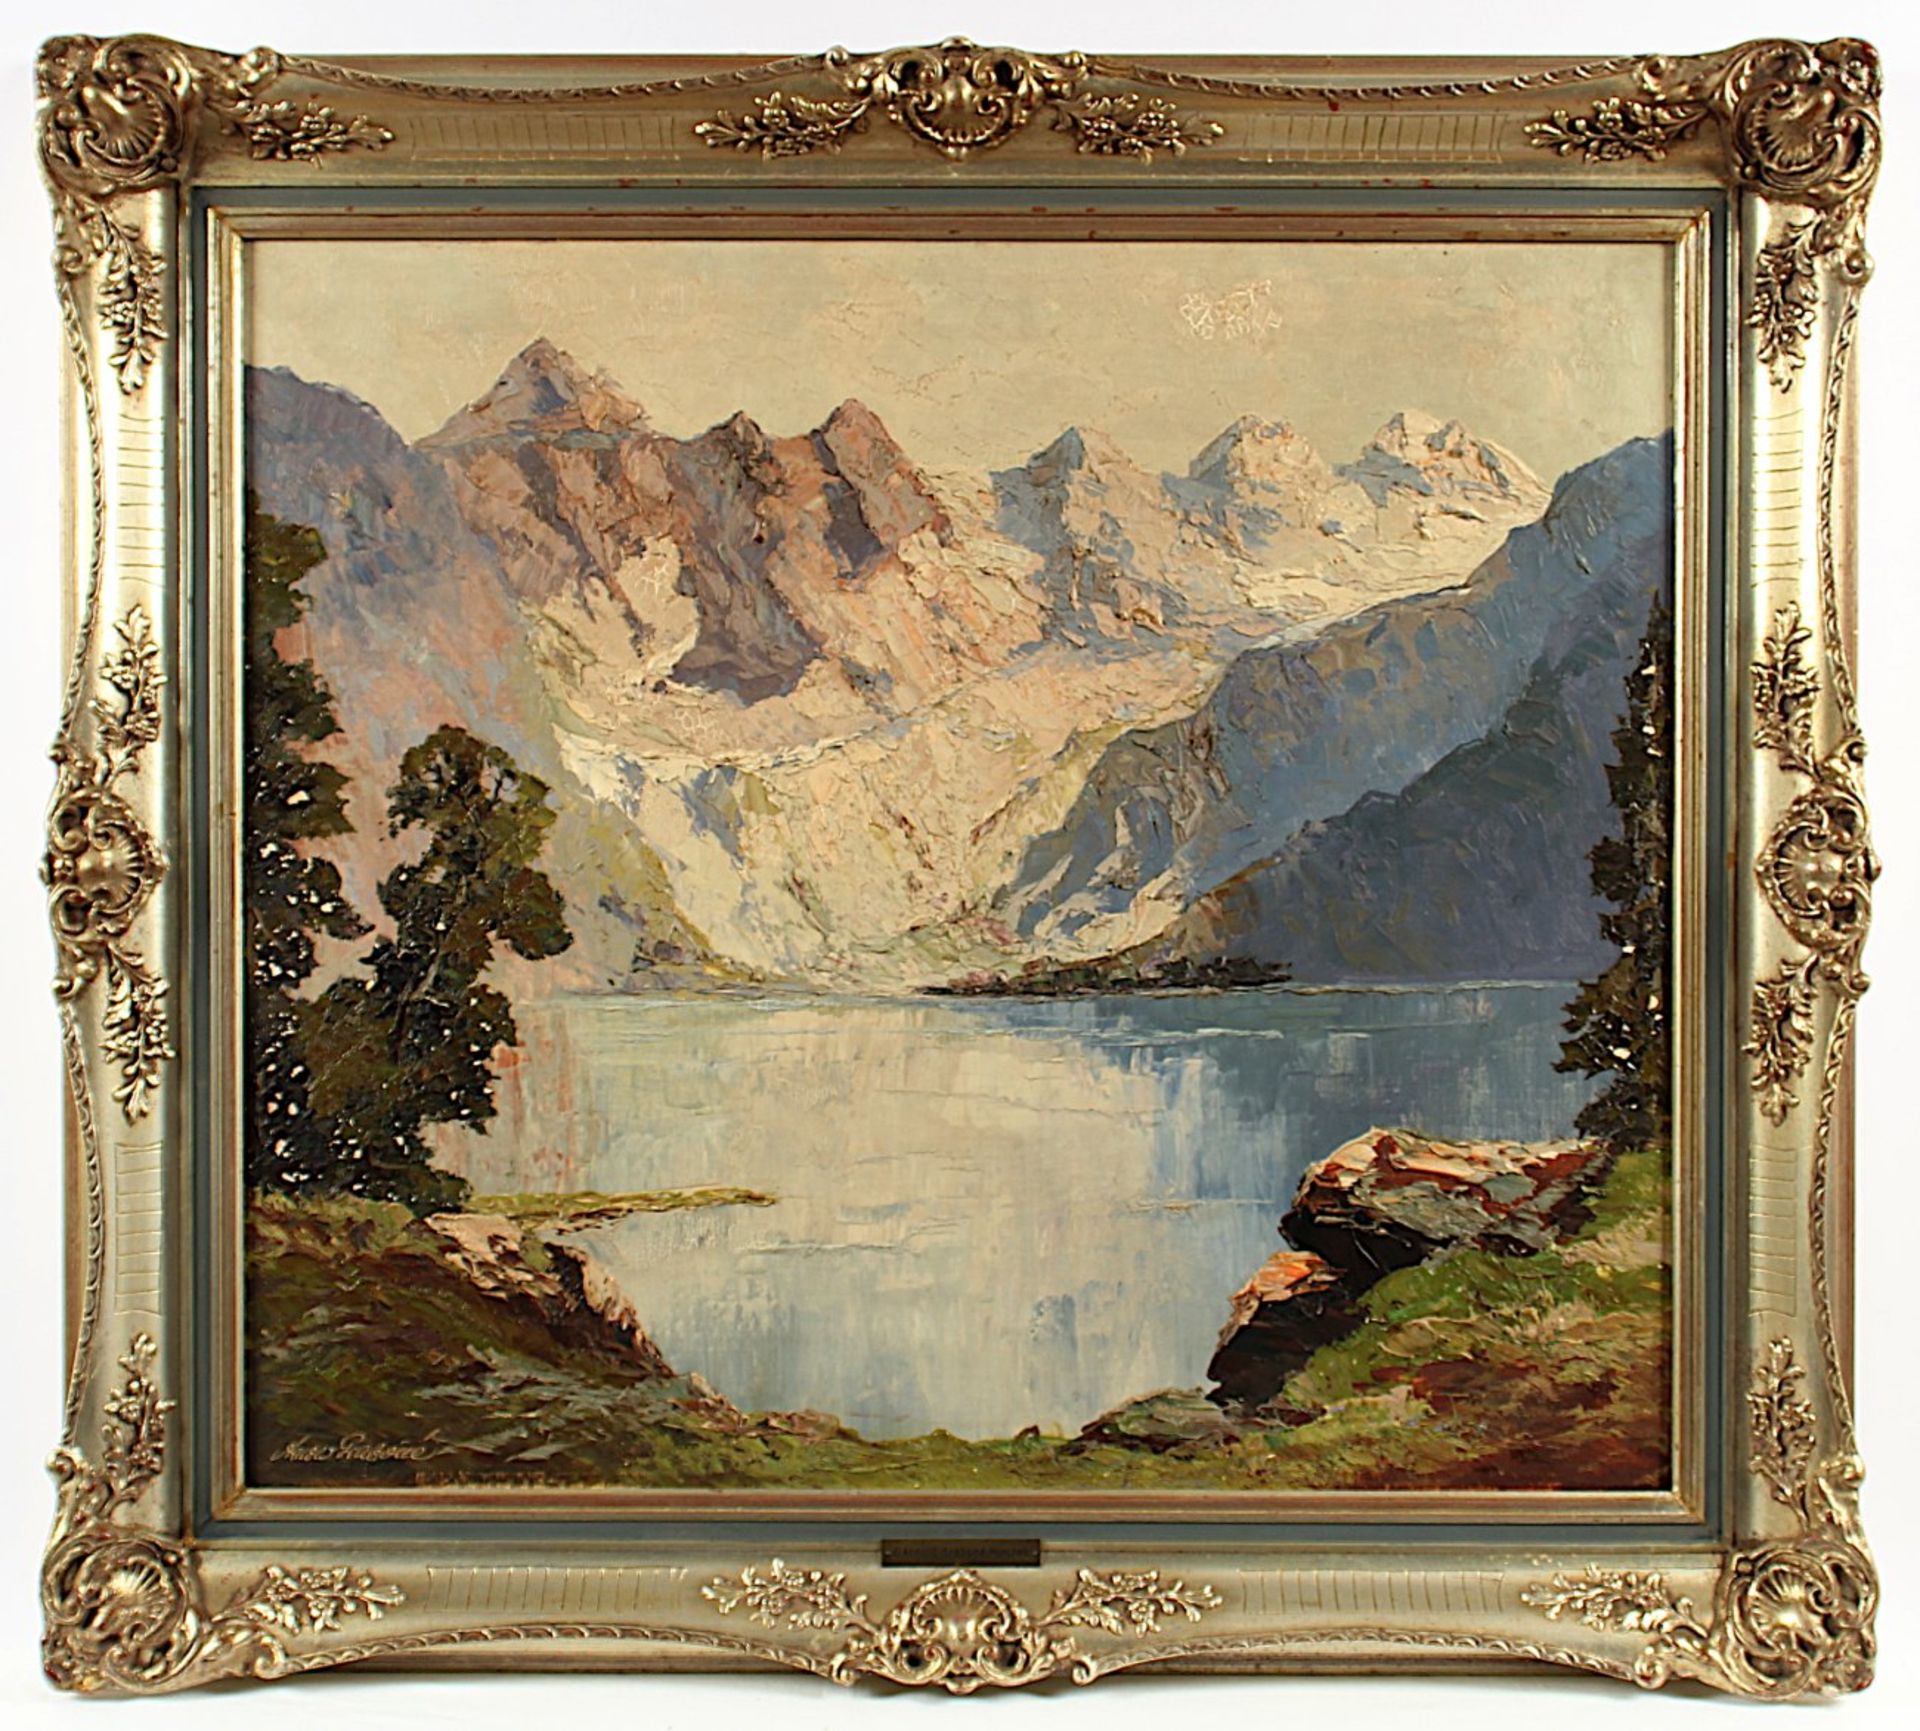 ARNOLD-GRABONÉ, Georg (1896-1982), "Blick auf den Obersee bei Berchtesgaden", Öl/Lwd., 70 x 80,